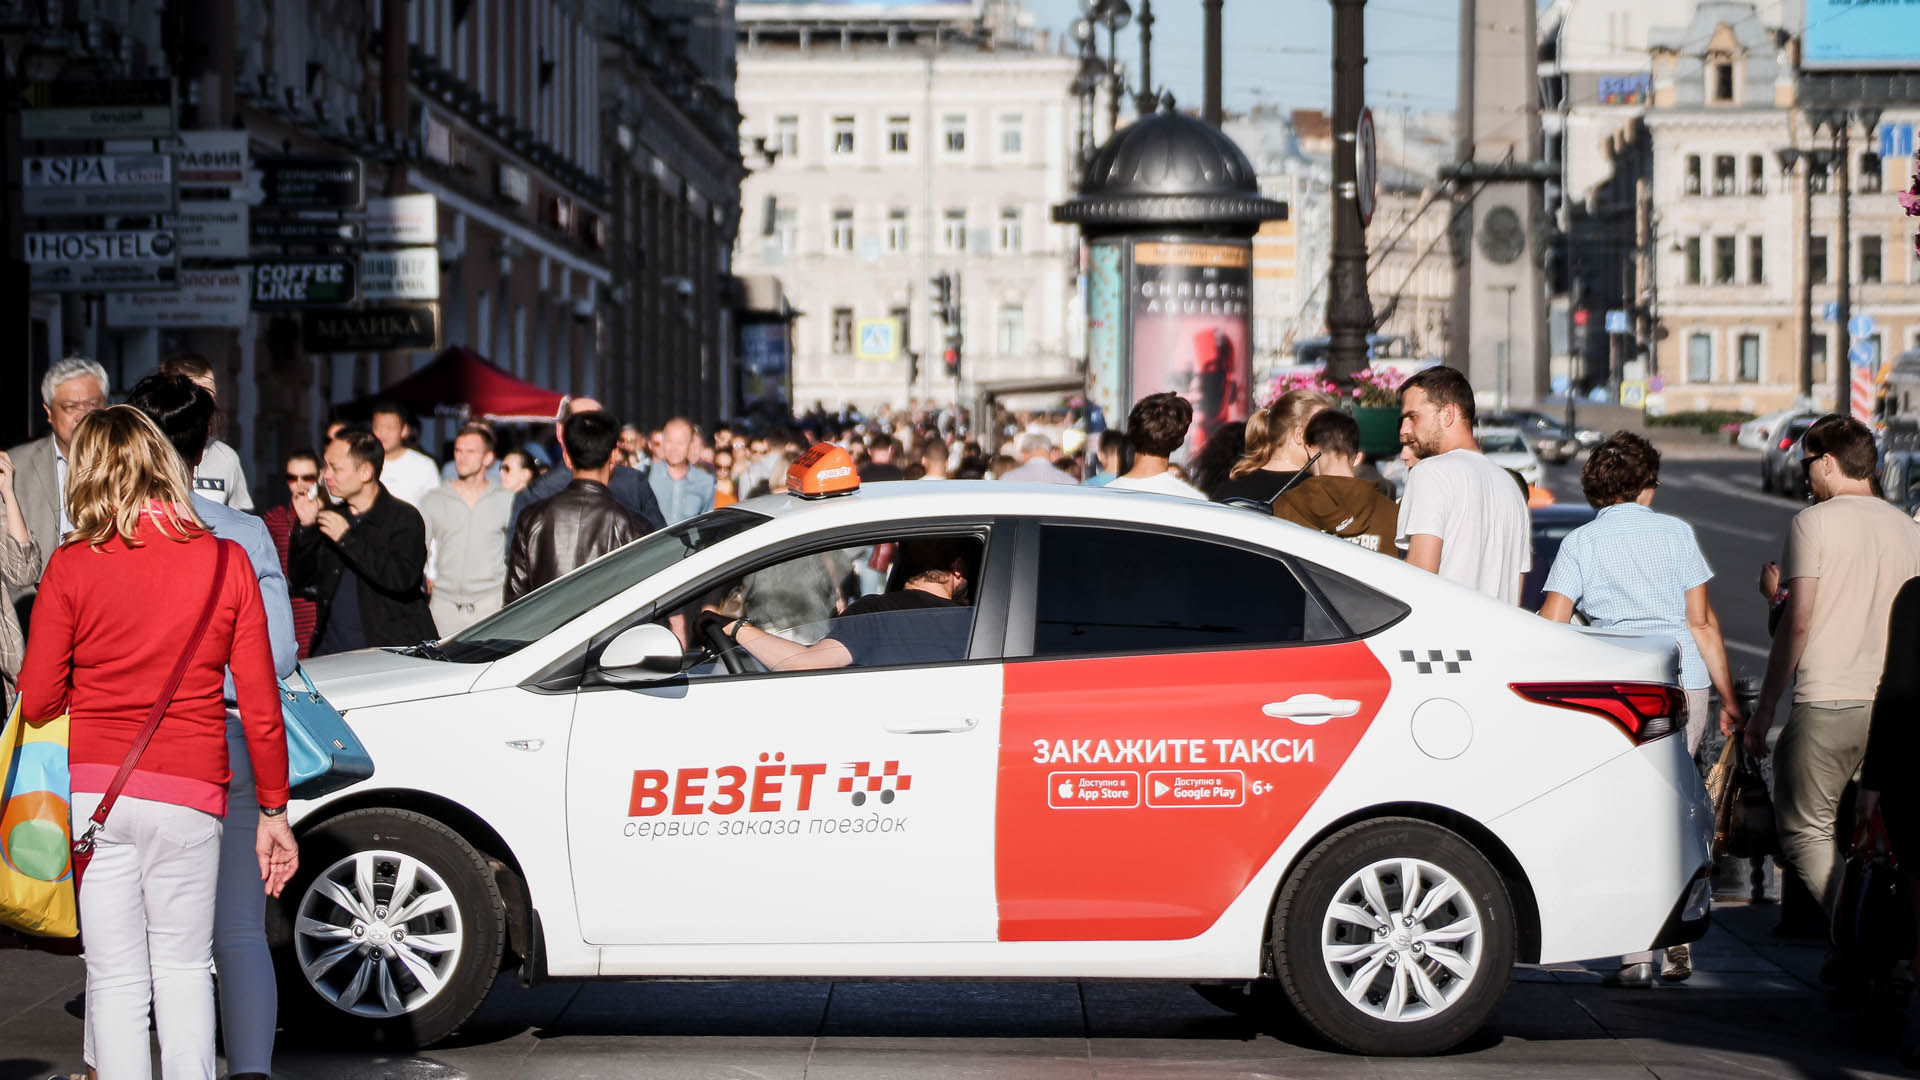 Группа компаний Яндекс.Такси покупает колл-центры и бизнес по заказу грузоперевозок группы компаний «Везёт»